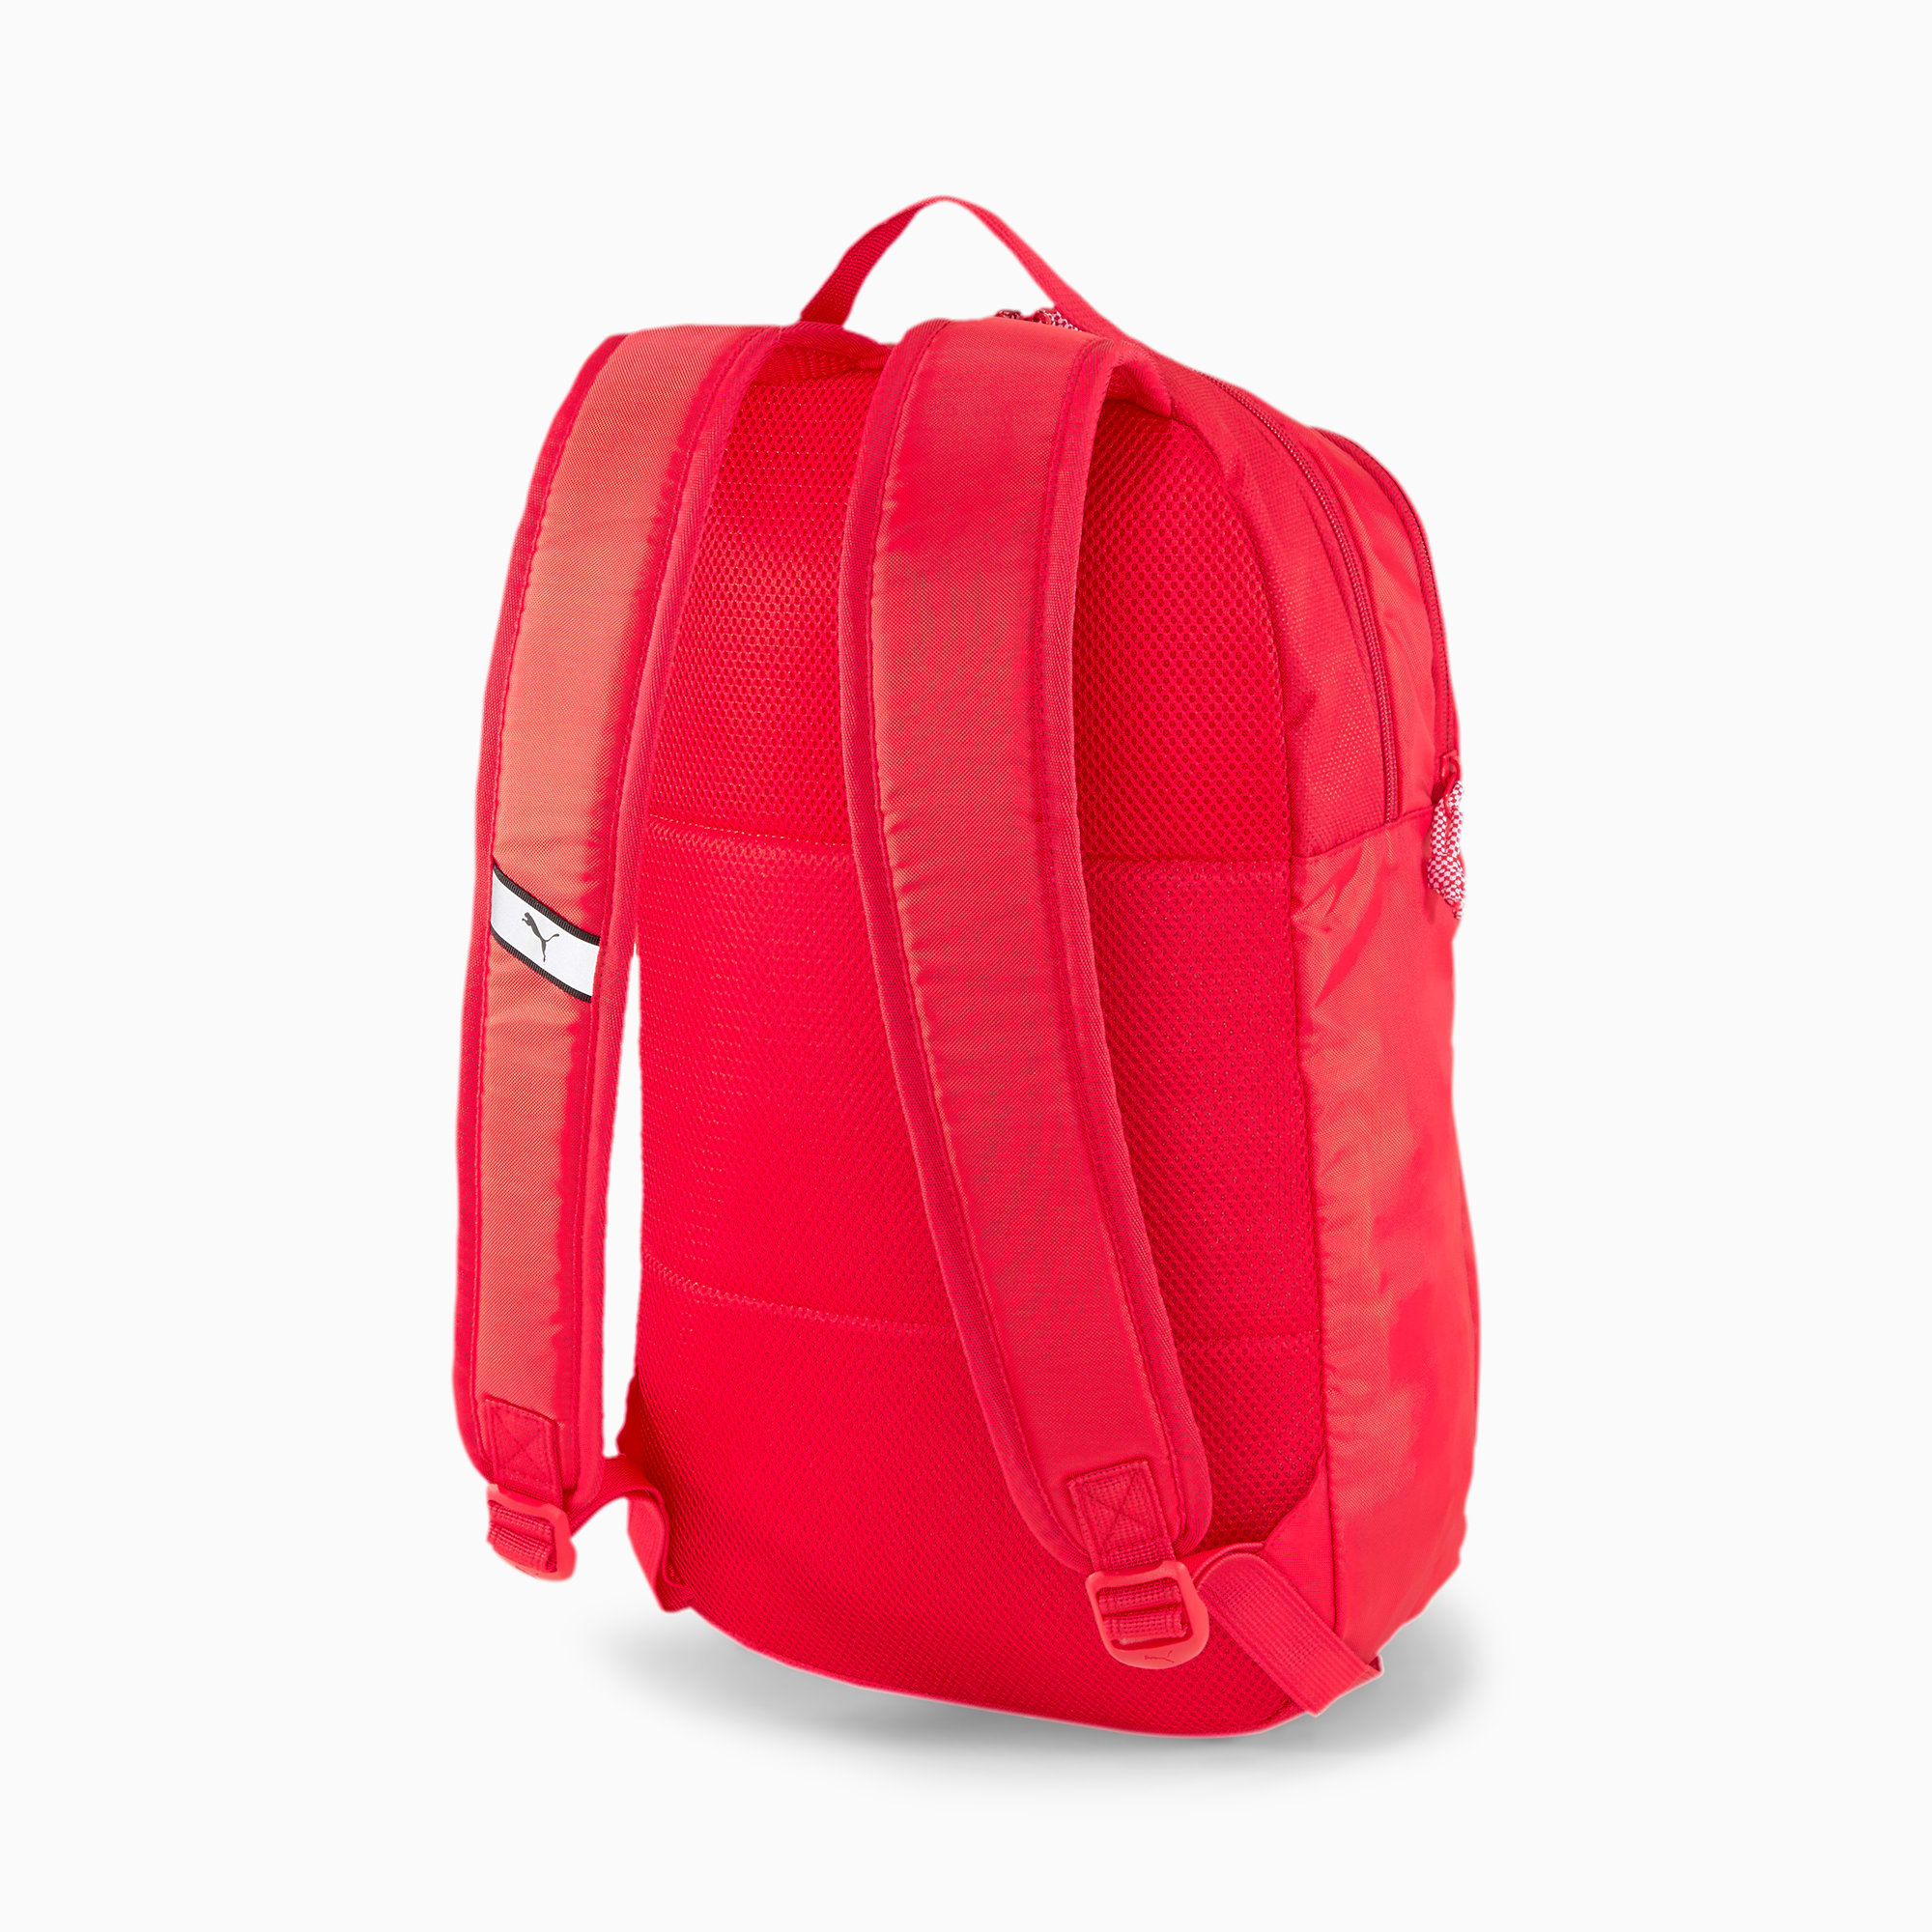 puma ferrari backpack 2016